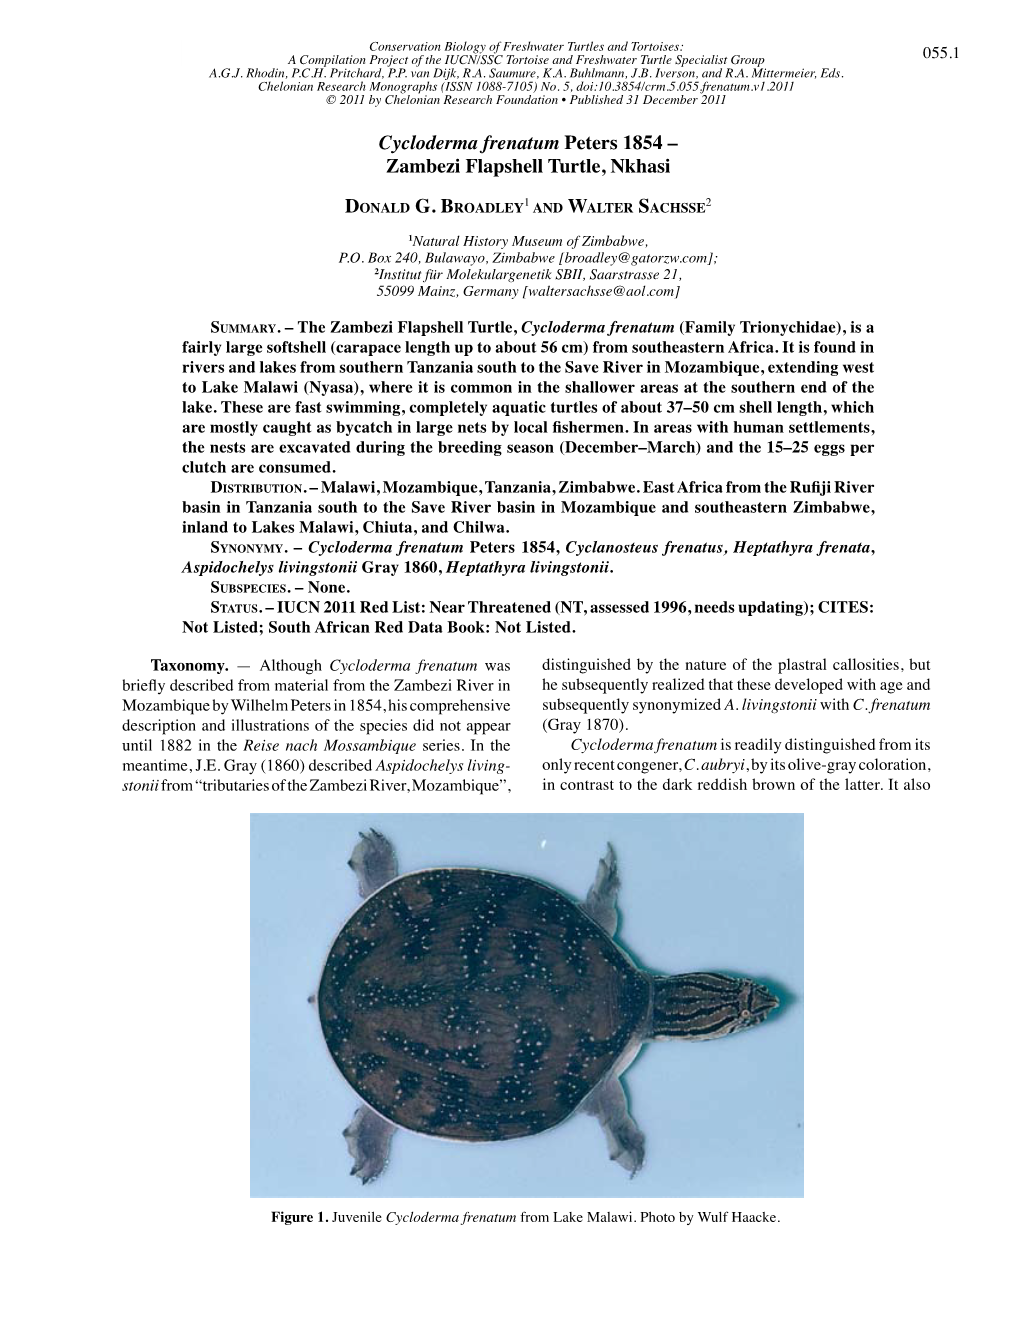 Cycloderma Frenatum Peters 1854 – Zambezi Flapshell Turtle, Nkhasi